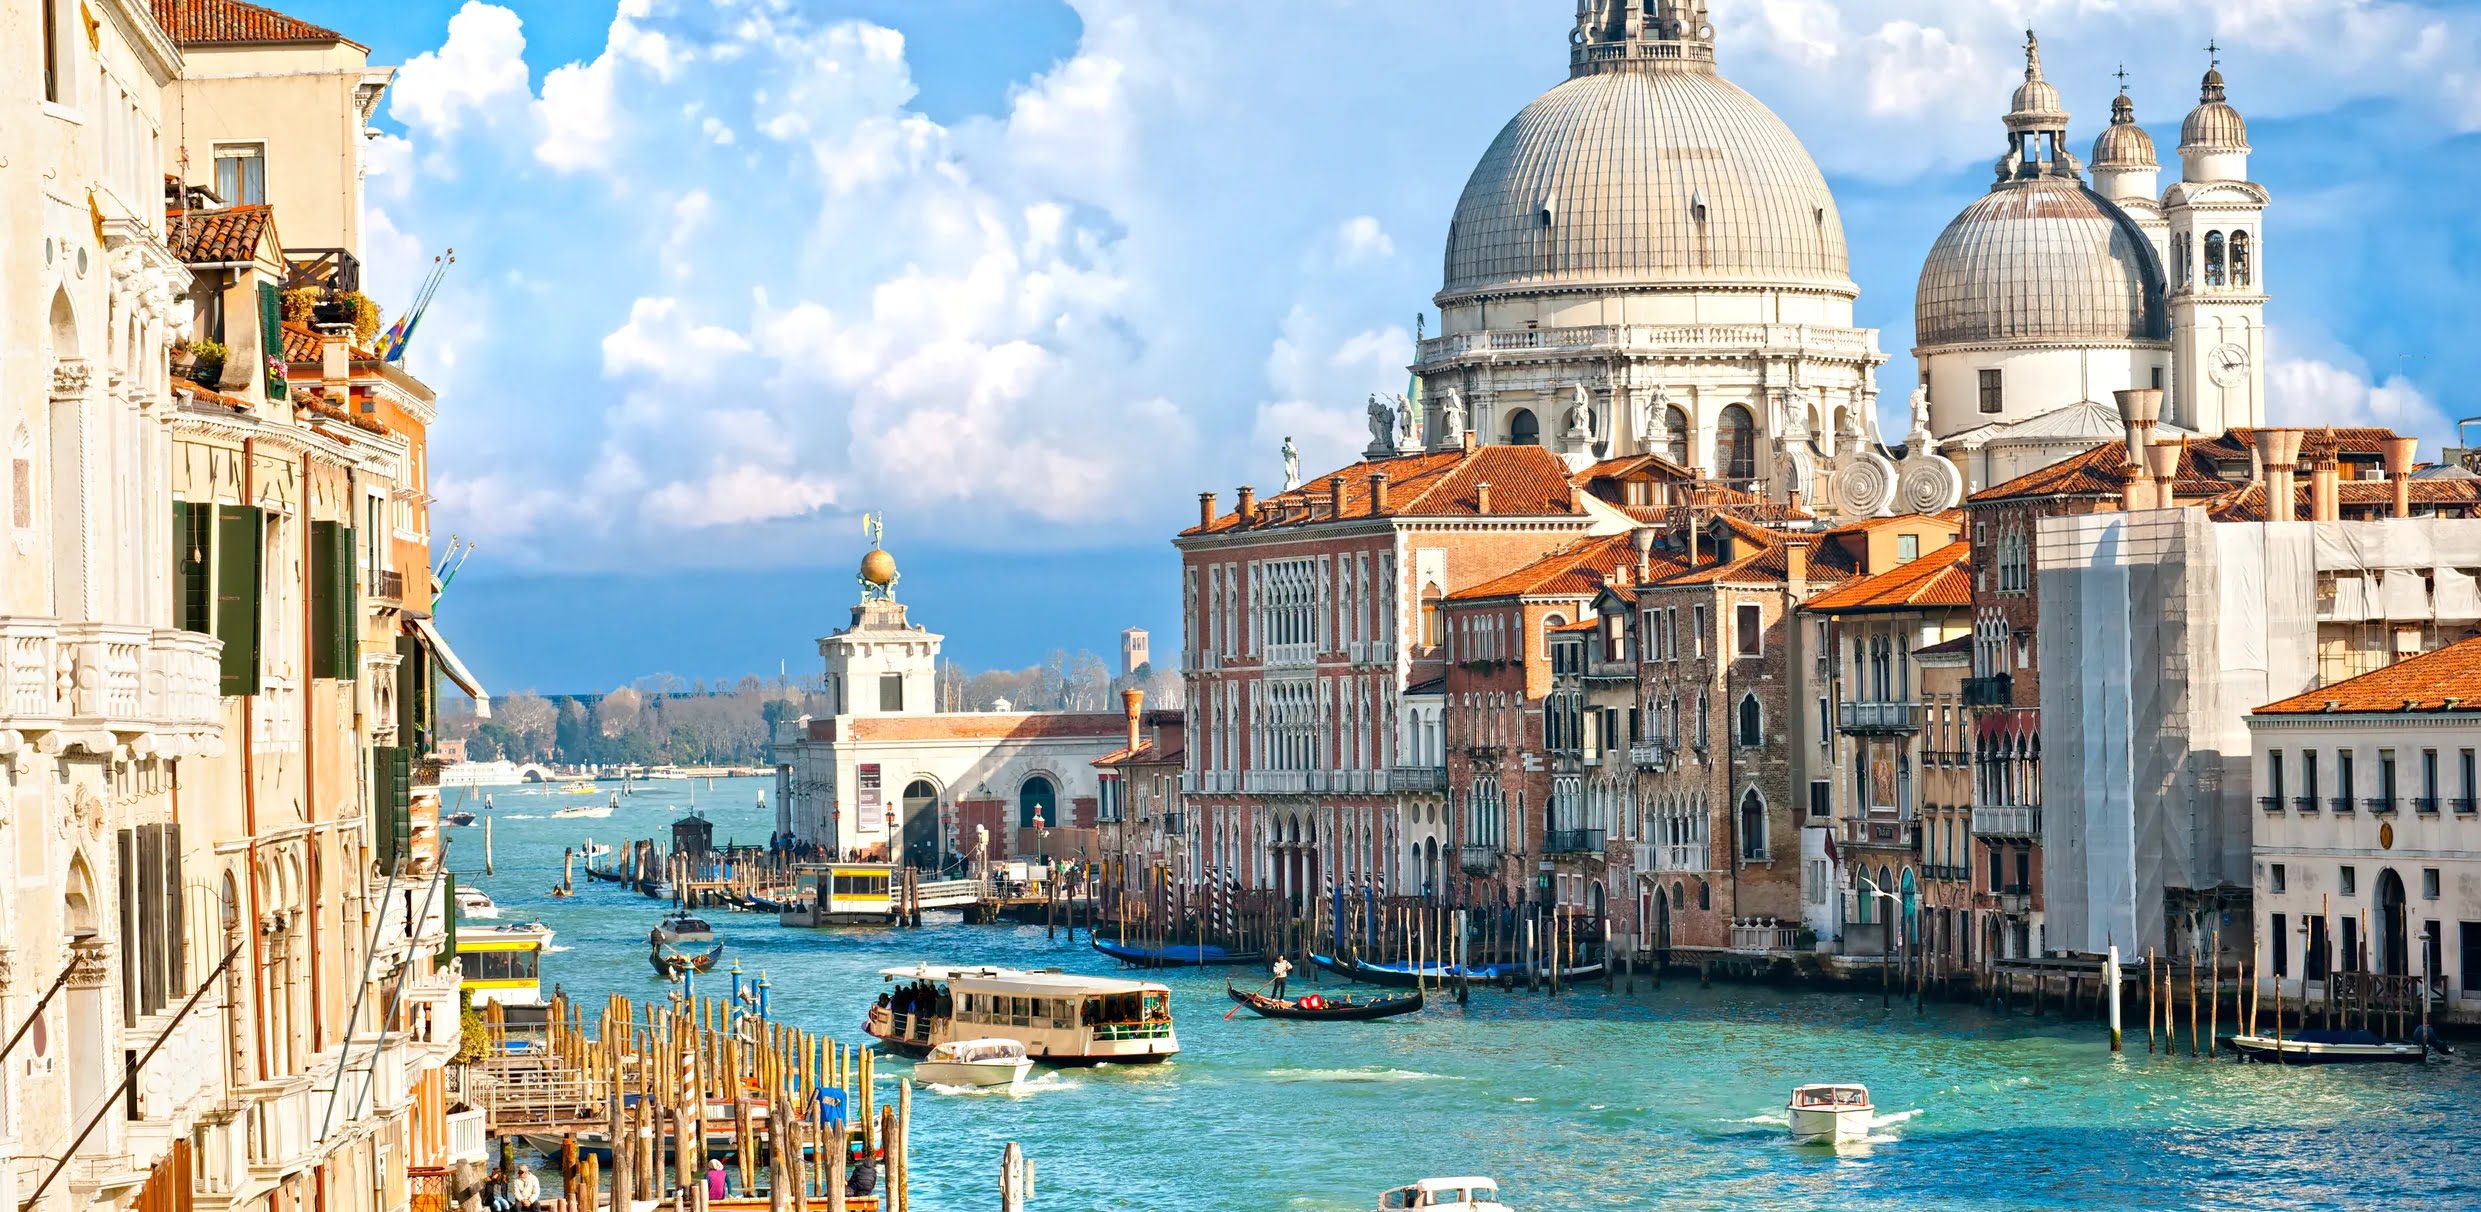 Venedik Giriş Ücreti